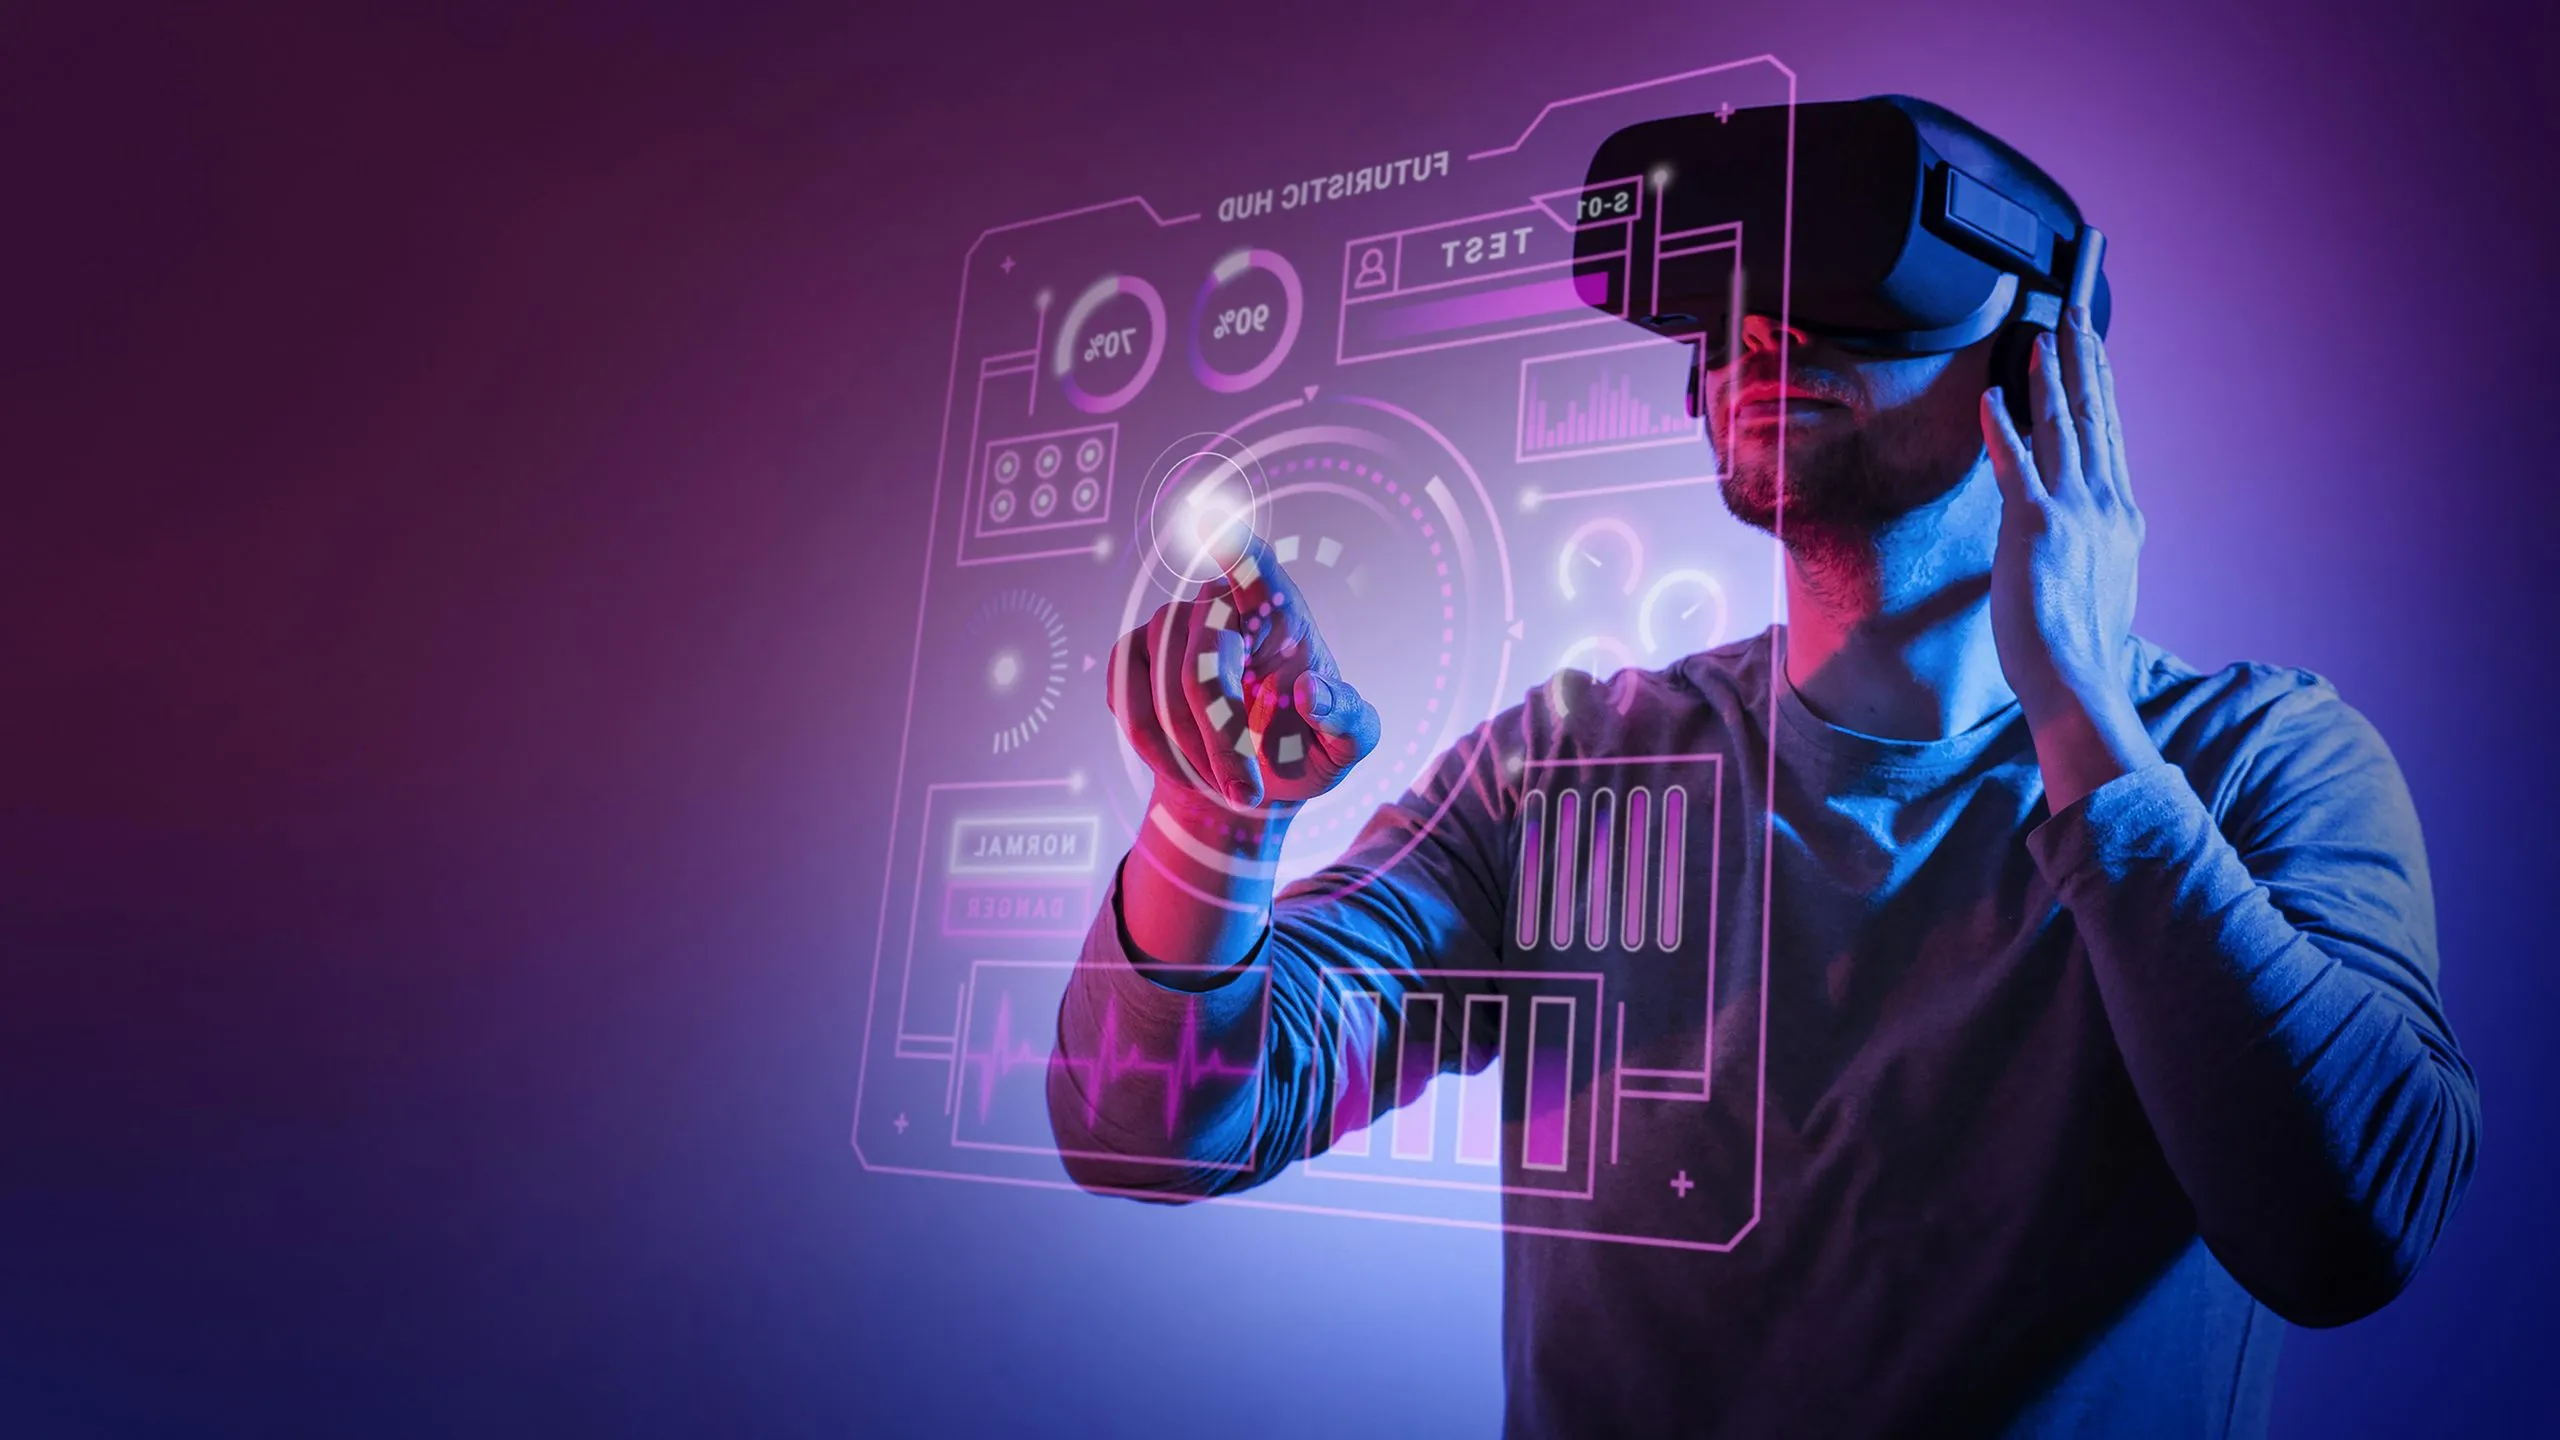 图片展示一位戴着虚拟现实头盔的男性，正用手指触摸虚拟的透明屏幕，周围有紫色光晕效果。